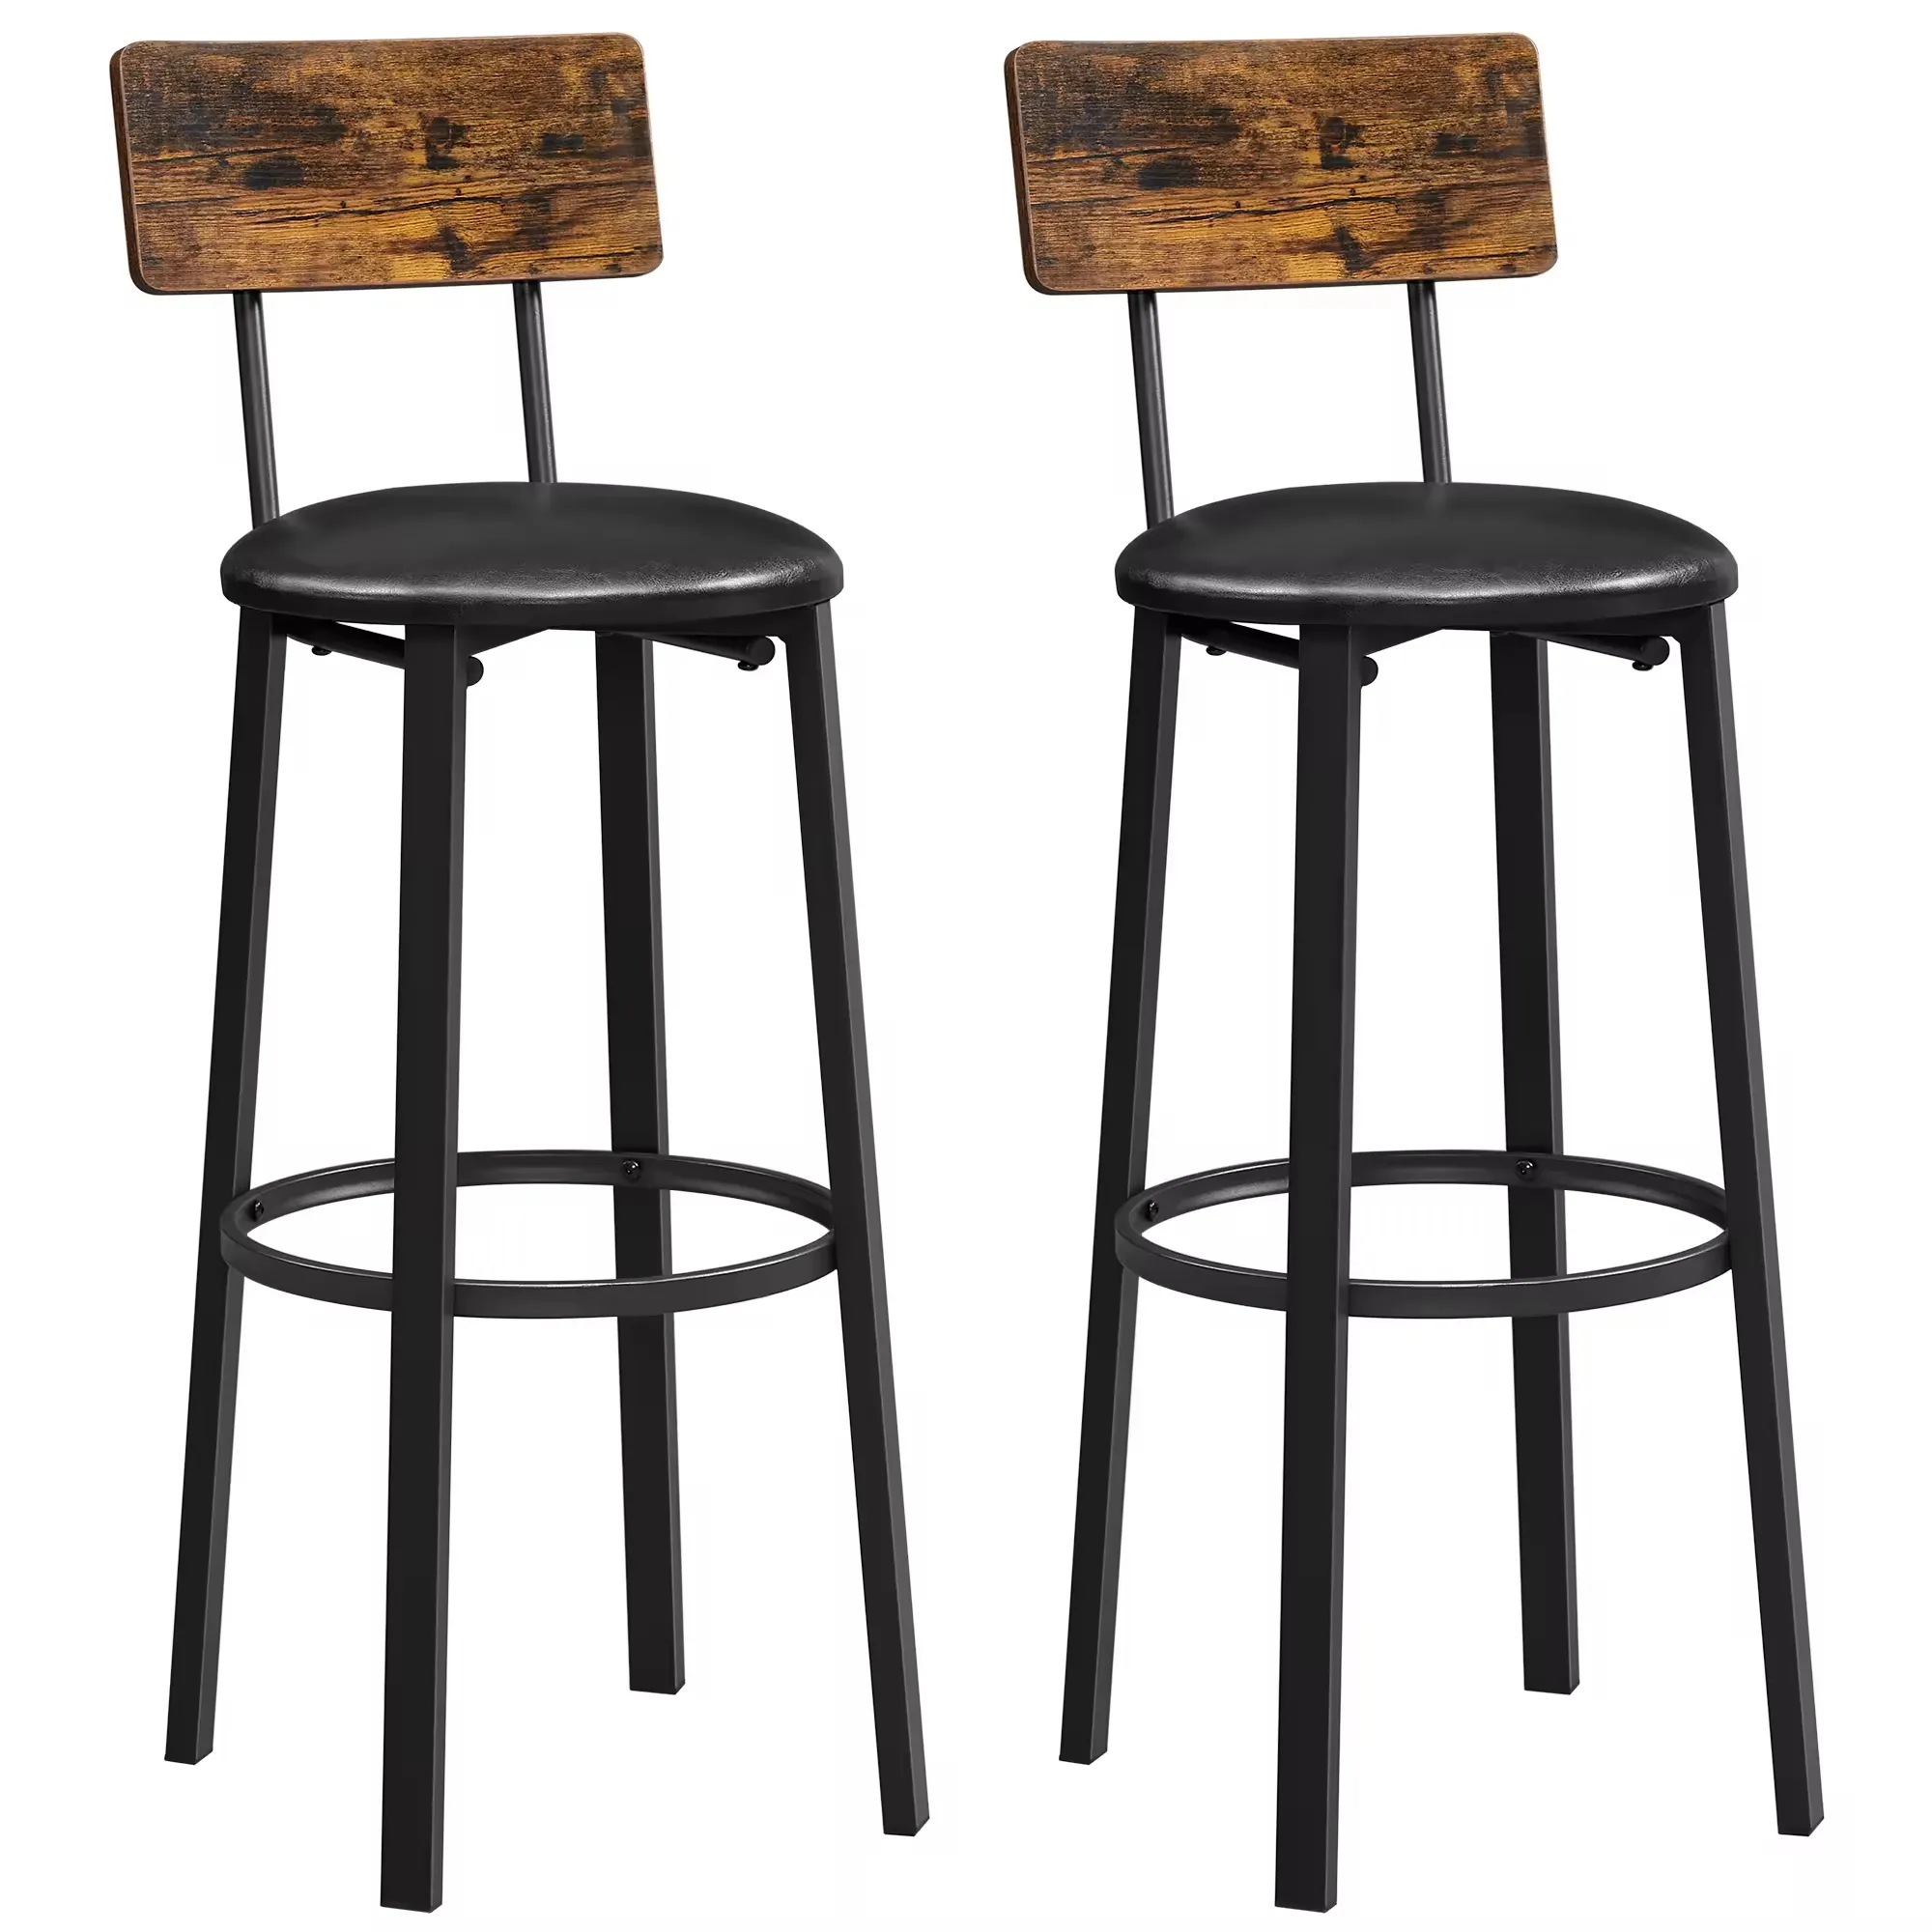 Черный барный стул с металлическими ножками и подставкой для ног высокие стойки барные стулья для ресторана домашнего бистро